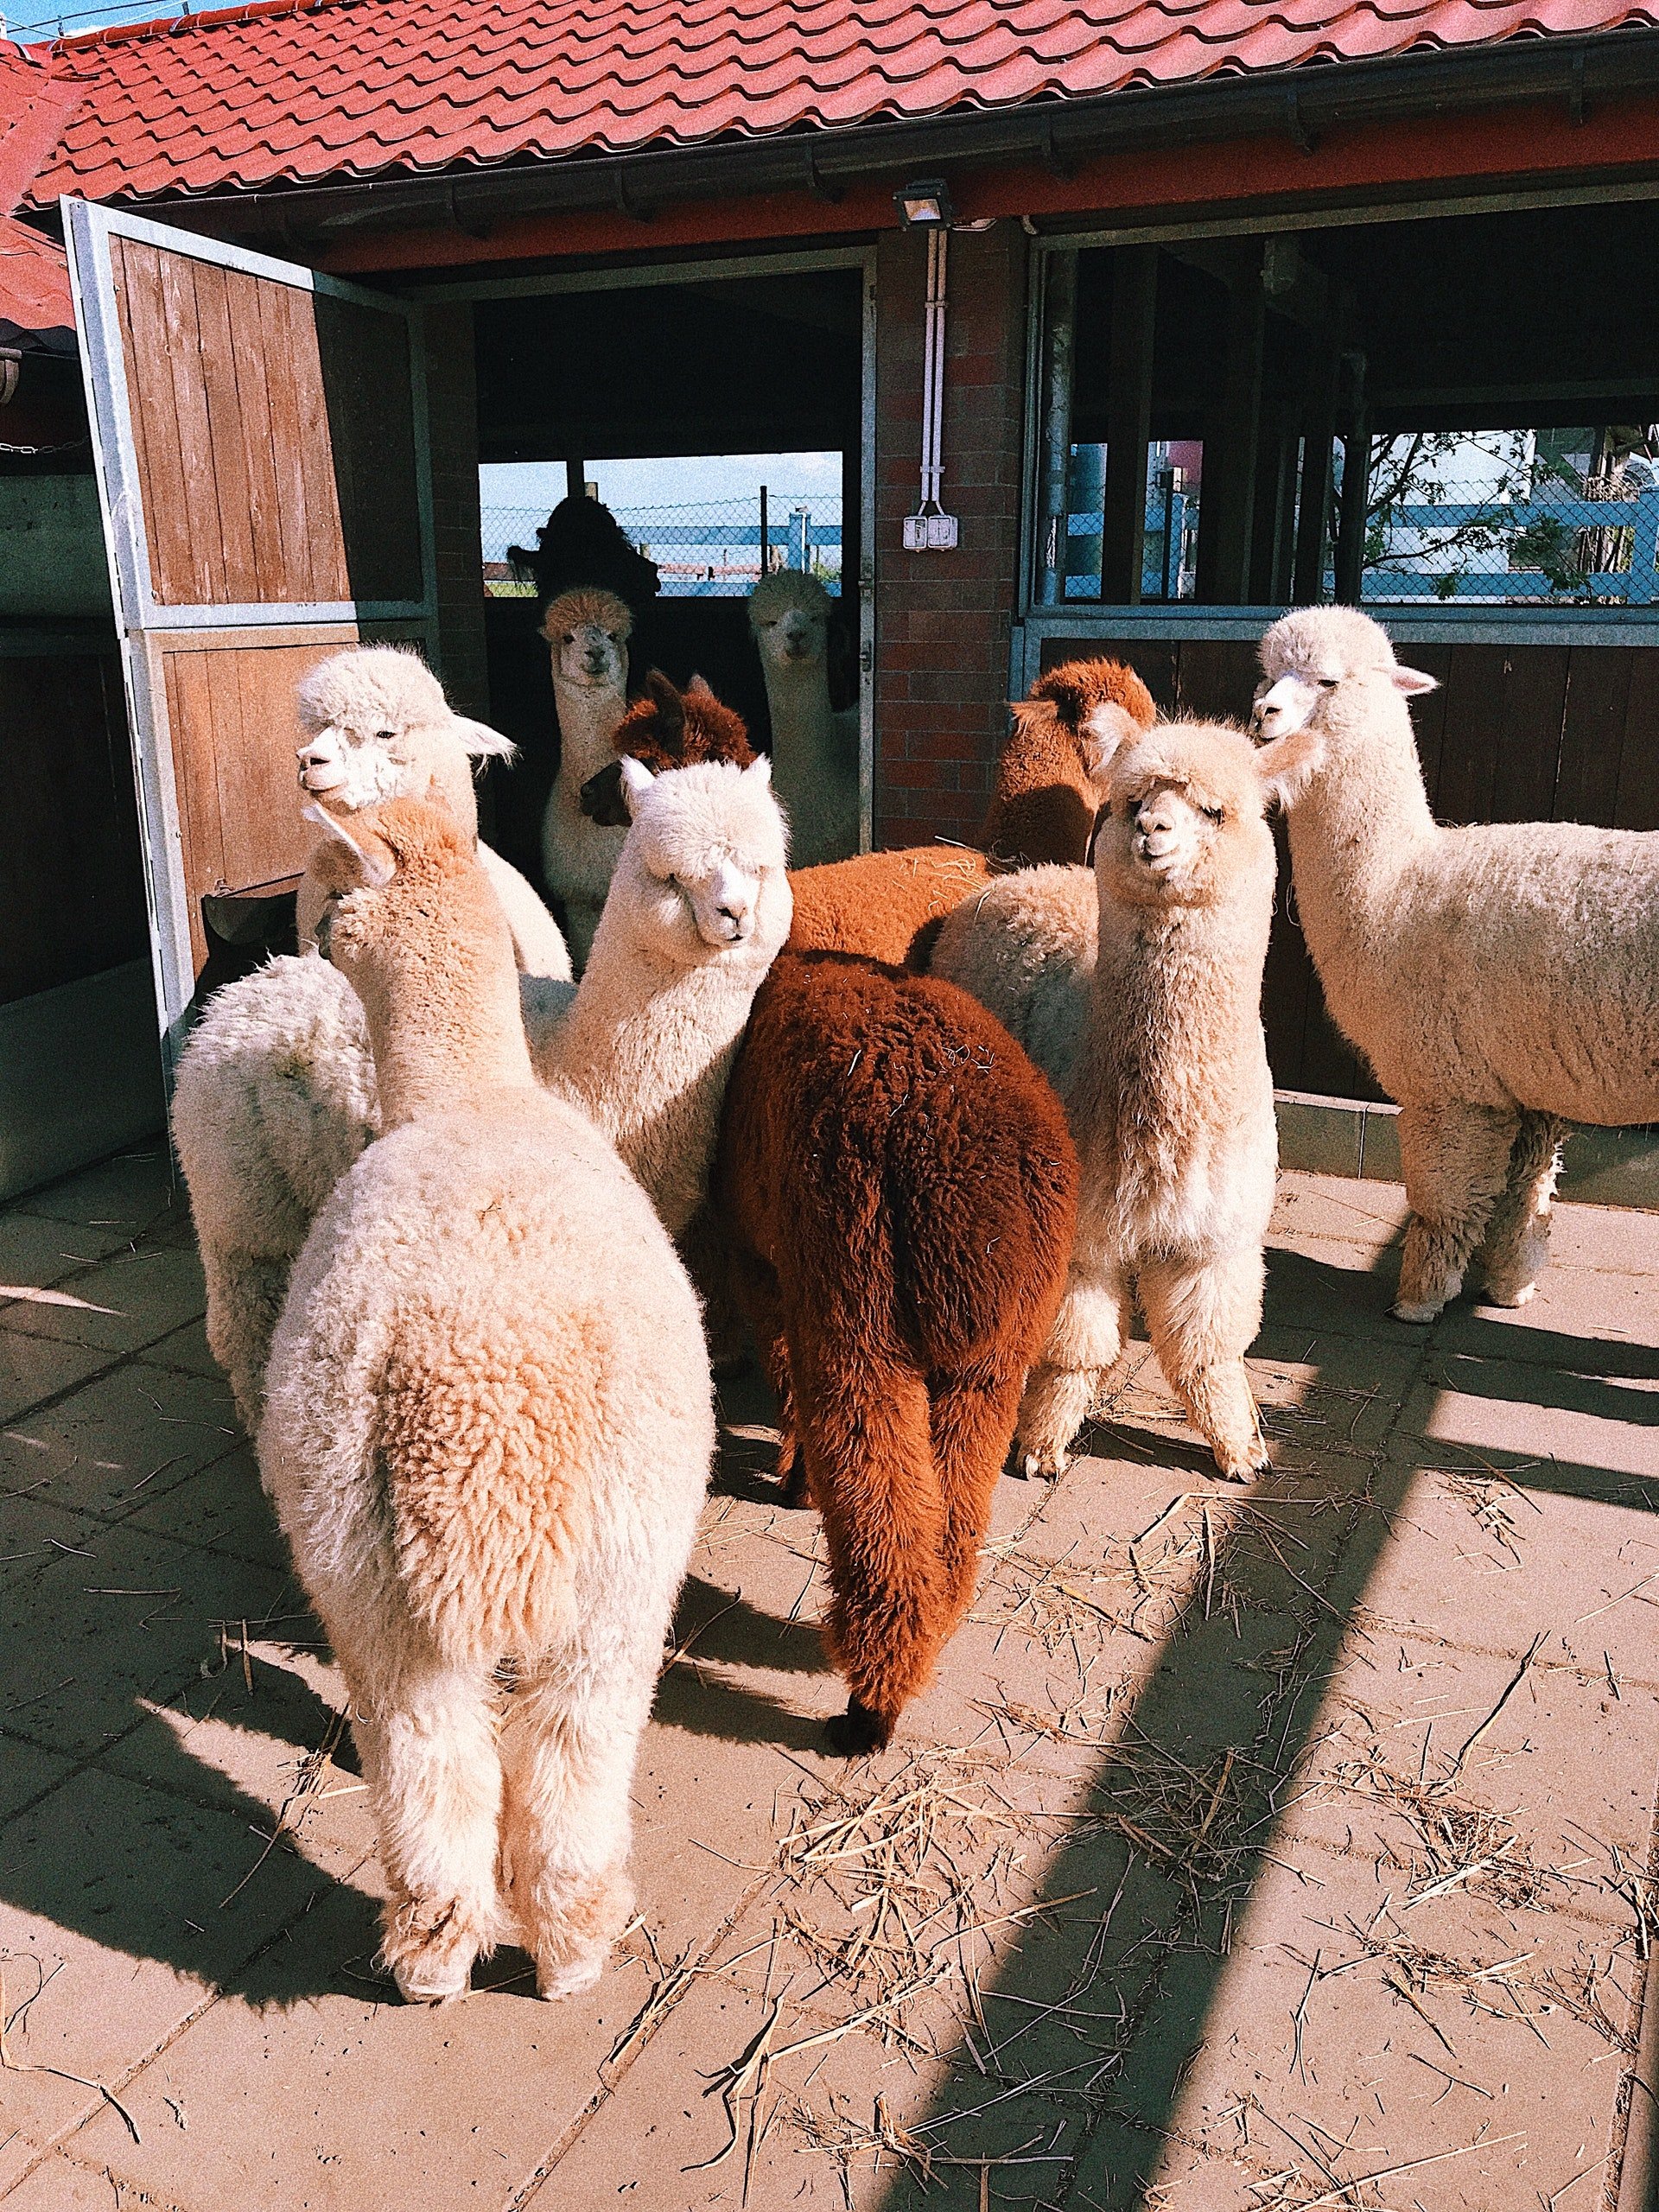 Grupo de alpacas en un establo. | Foto: Pexels